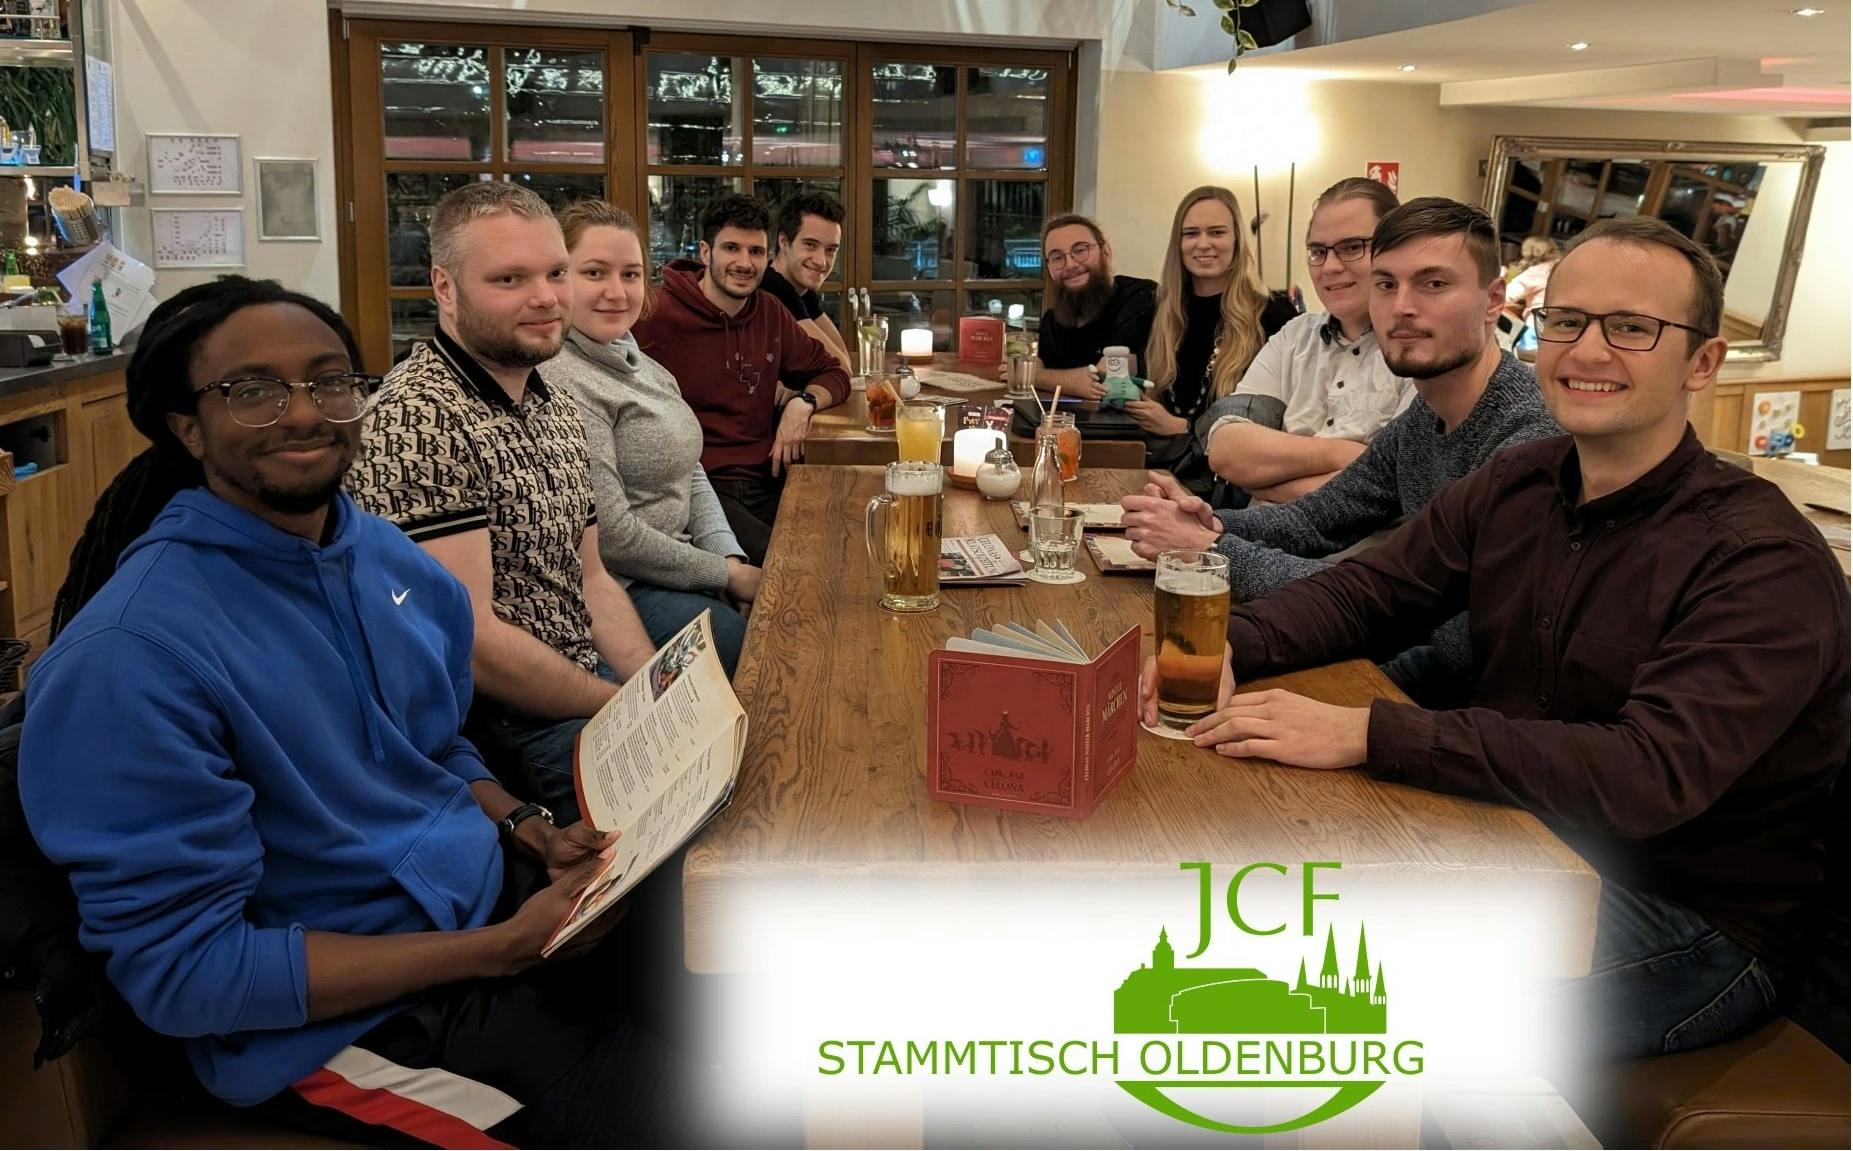 Stammtisch und Wahl vom JCF Oldenburg